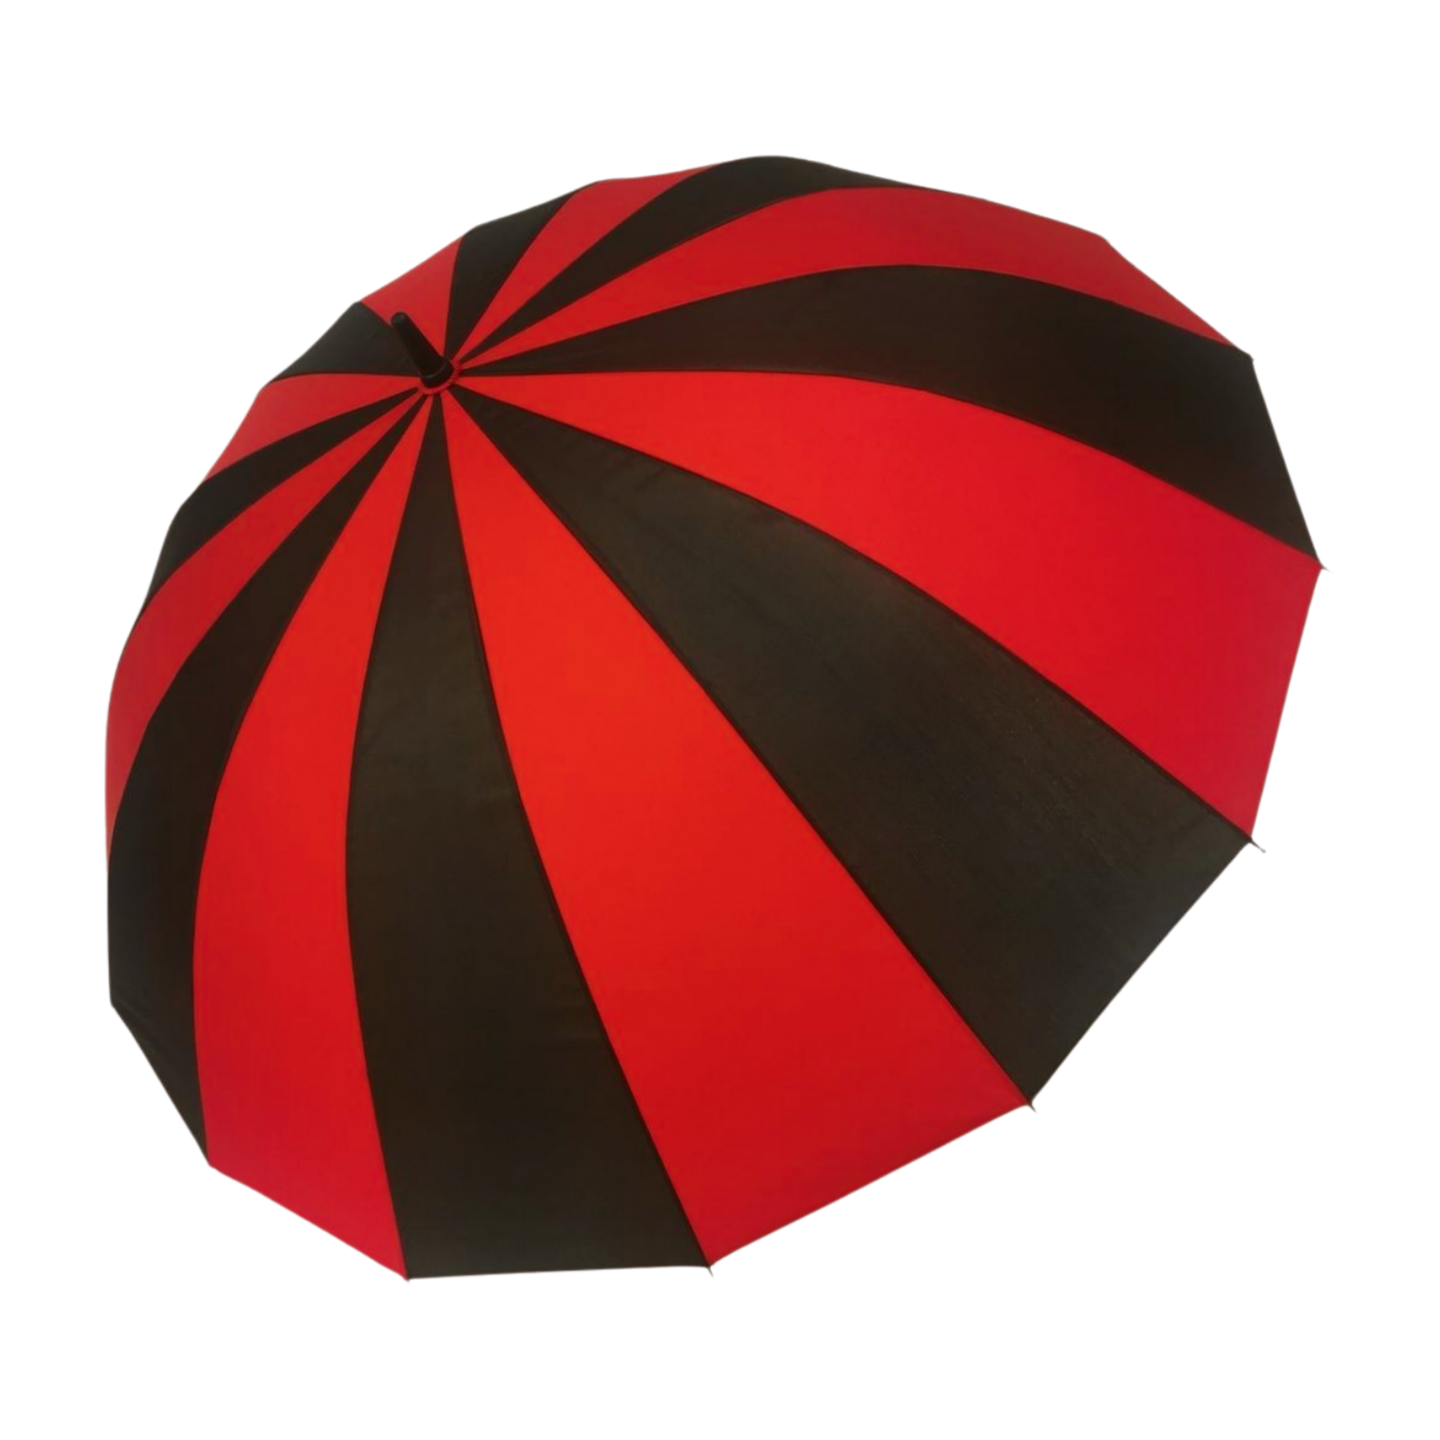 https://www.hodaumbrella.com/16-impano-boss-golf-umbrella-product/